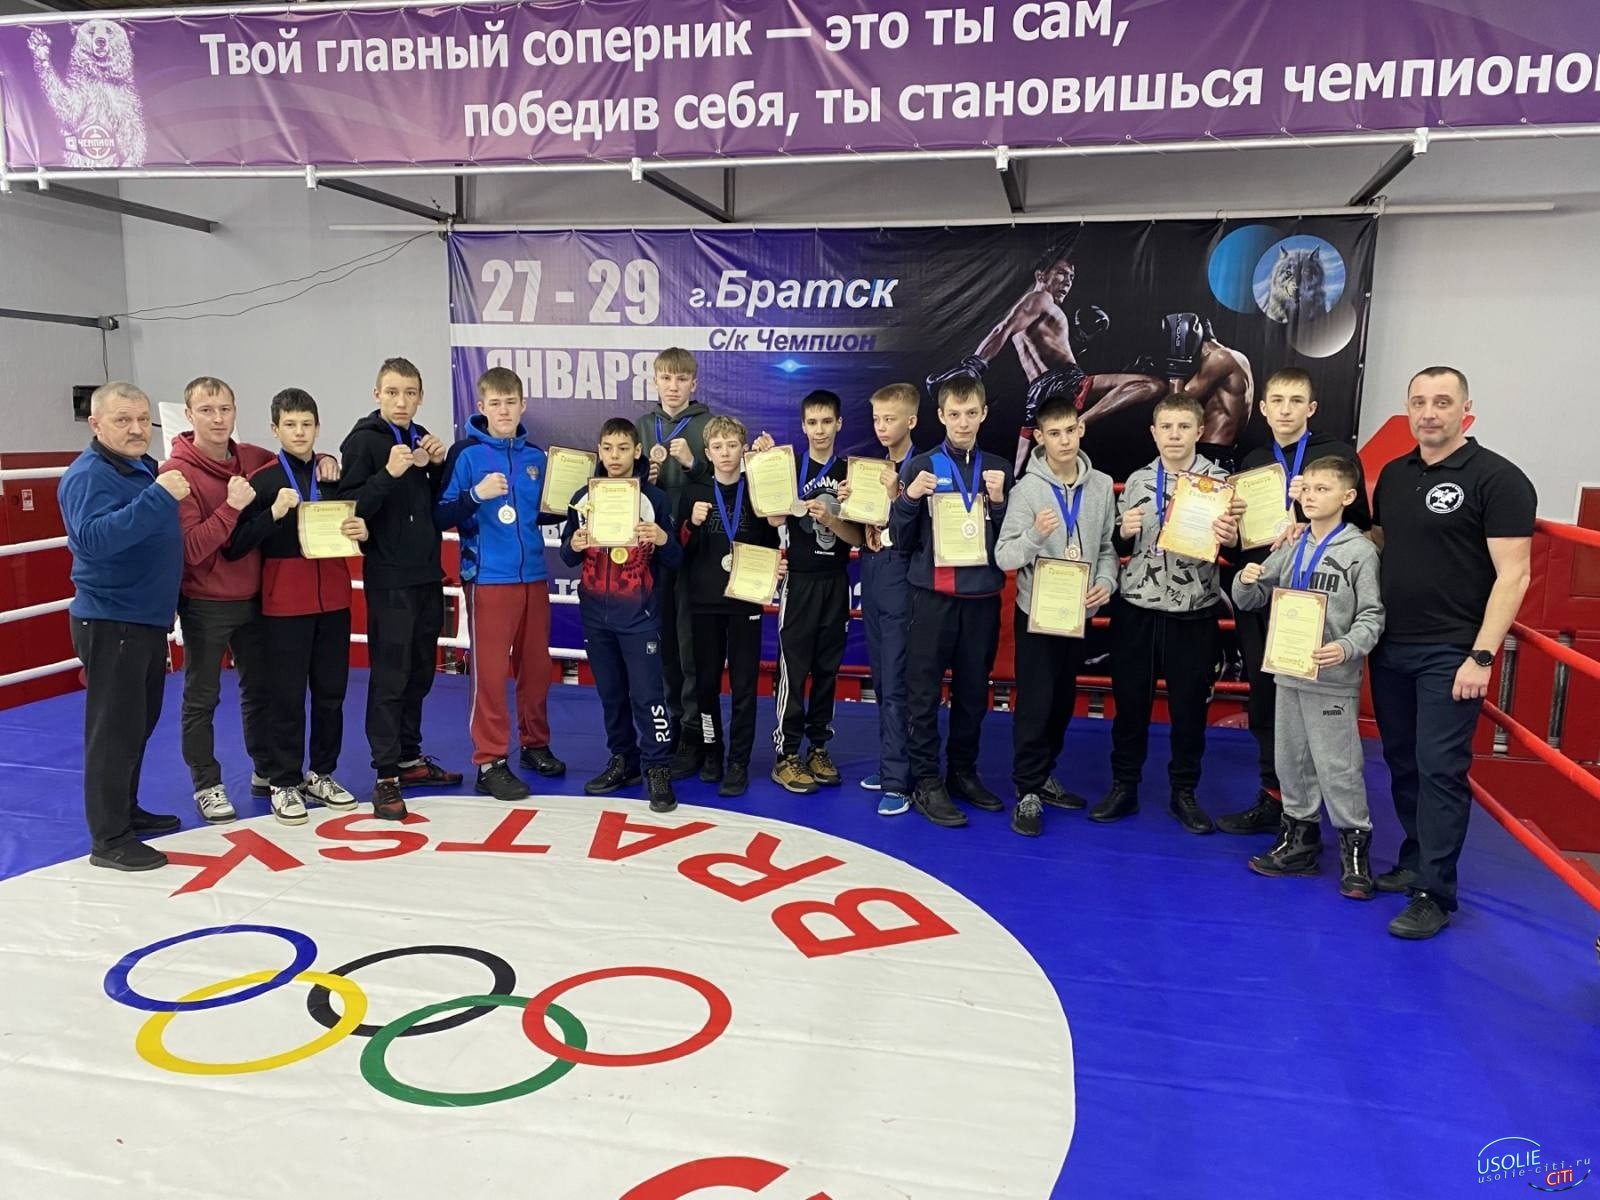 Юные боксеры из Усолья взяли призовые места в Братске